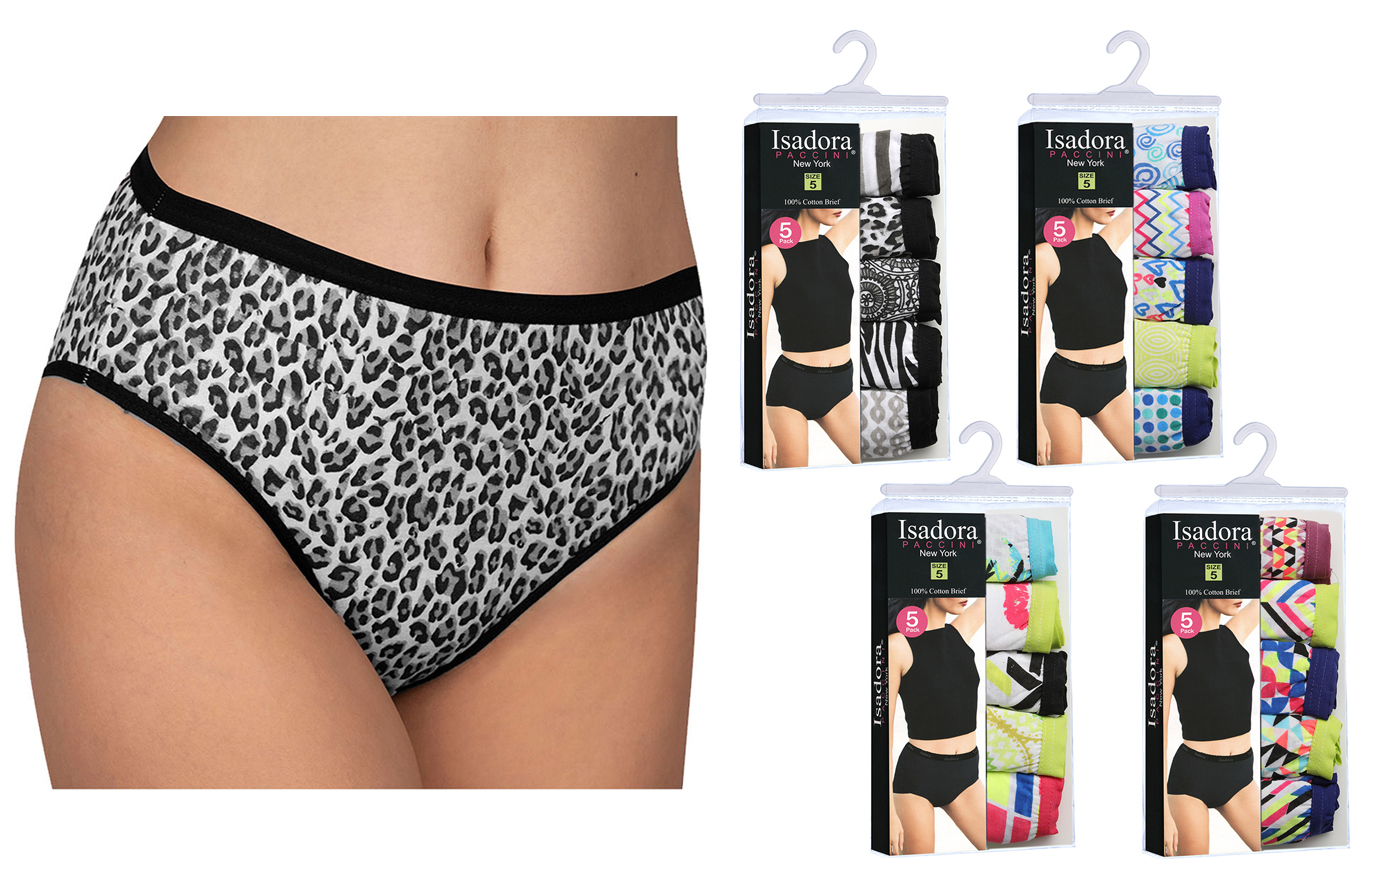 Wholesale Bulk Lot 48 MEDIUM Pair Pack Variety Panties Thongs Underwear Lingerie 